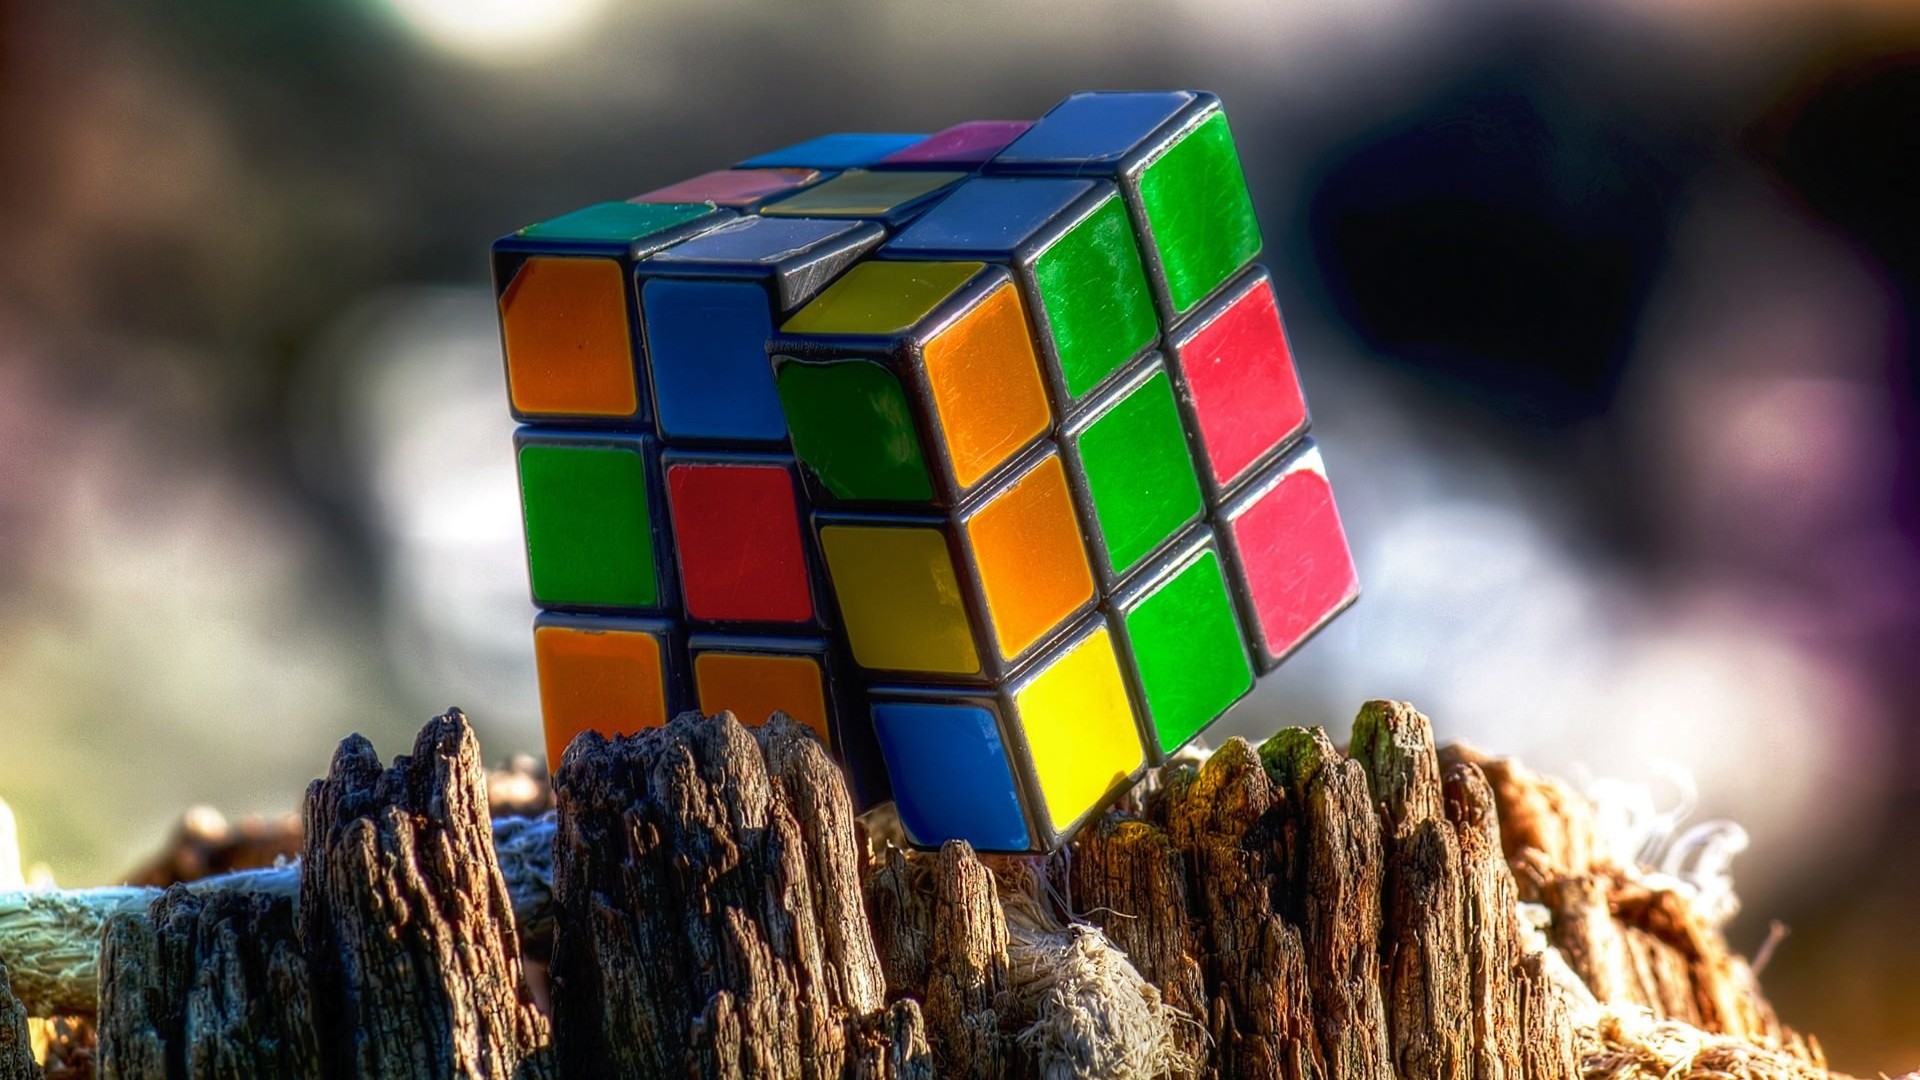 Rubik's Cube Wallpaper for Desktop 1920x1080